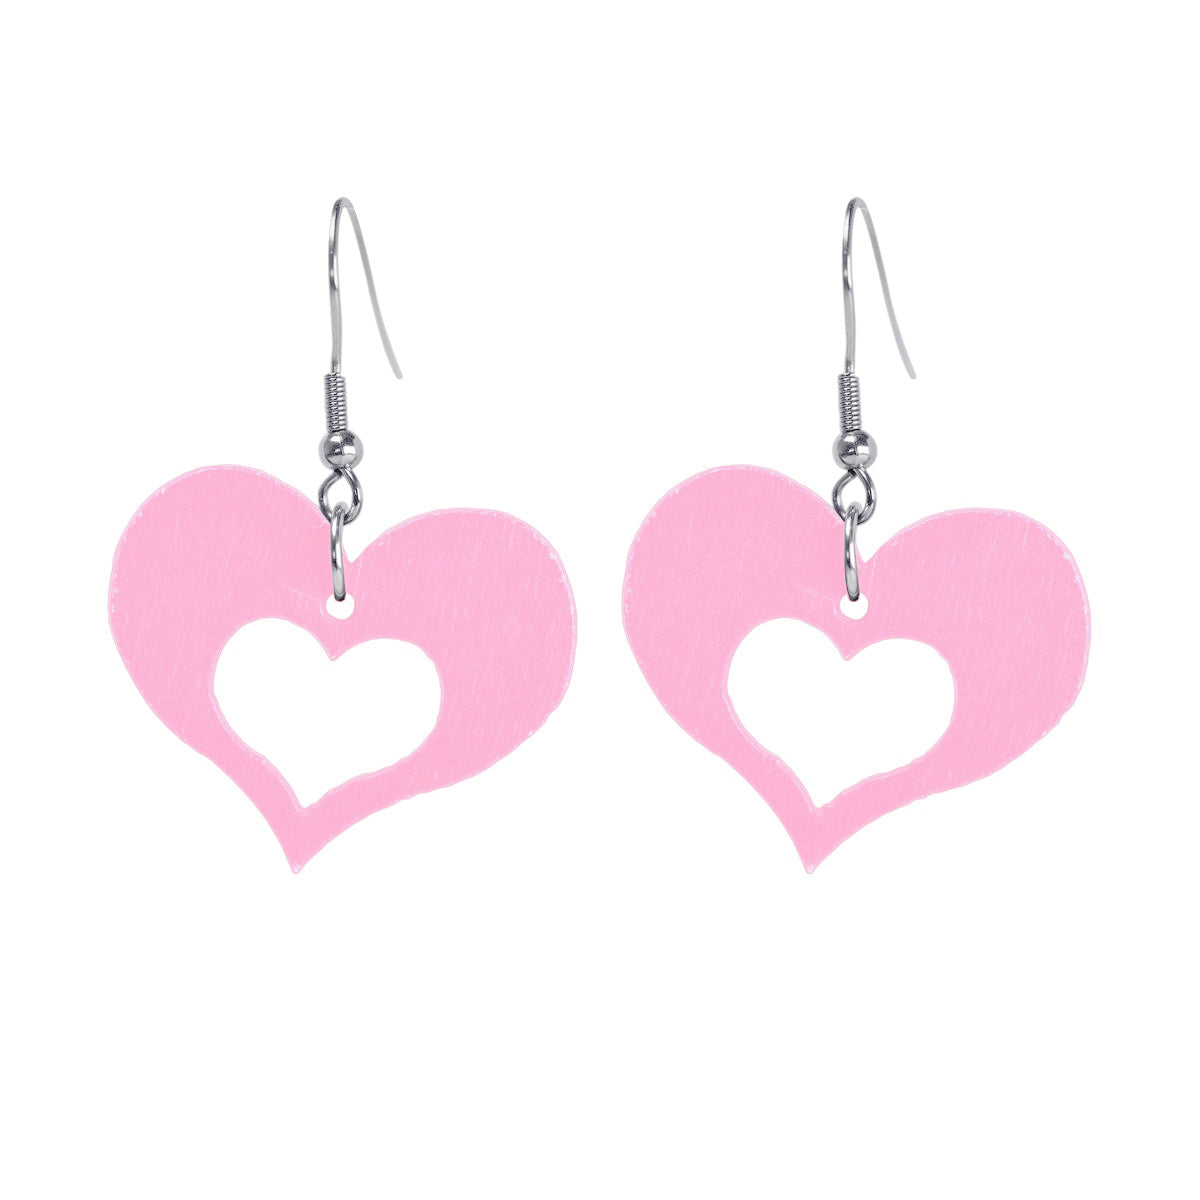 Domestic wooden earrings hearts (steel 316L)